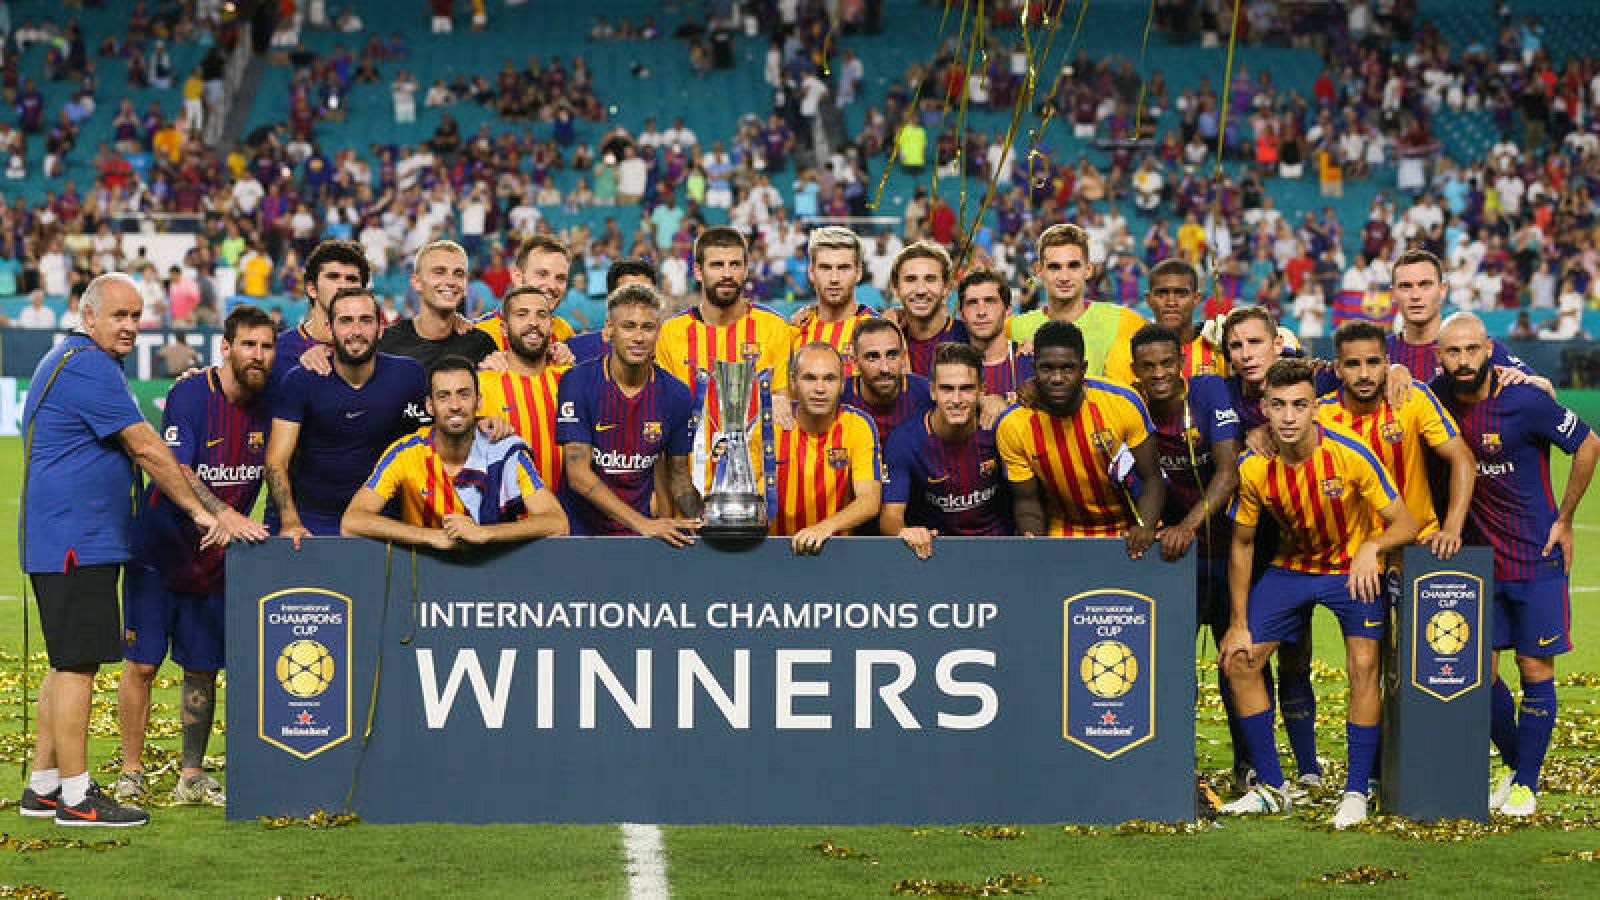 Los jugadores del F.C. Barcelona posan para una fotografía tras ganar el partido contra el Real Madrid del torneo Internantional Champions Cup el sábado 29 de julio de 2017, en el estadio Hard Rock de Miami, Florida (EE.UU.).